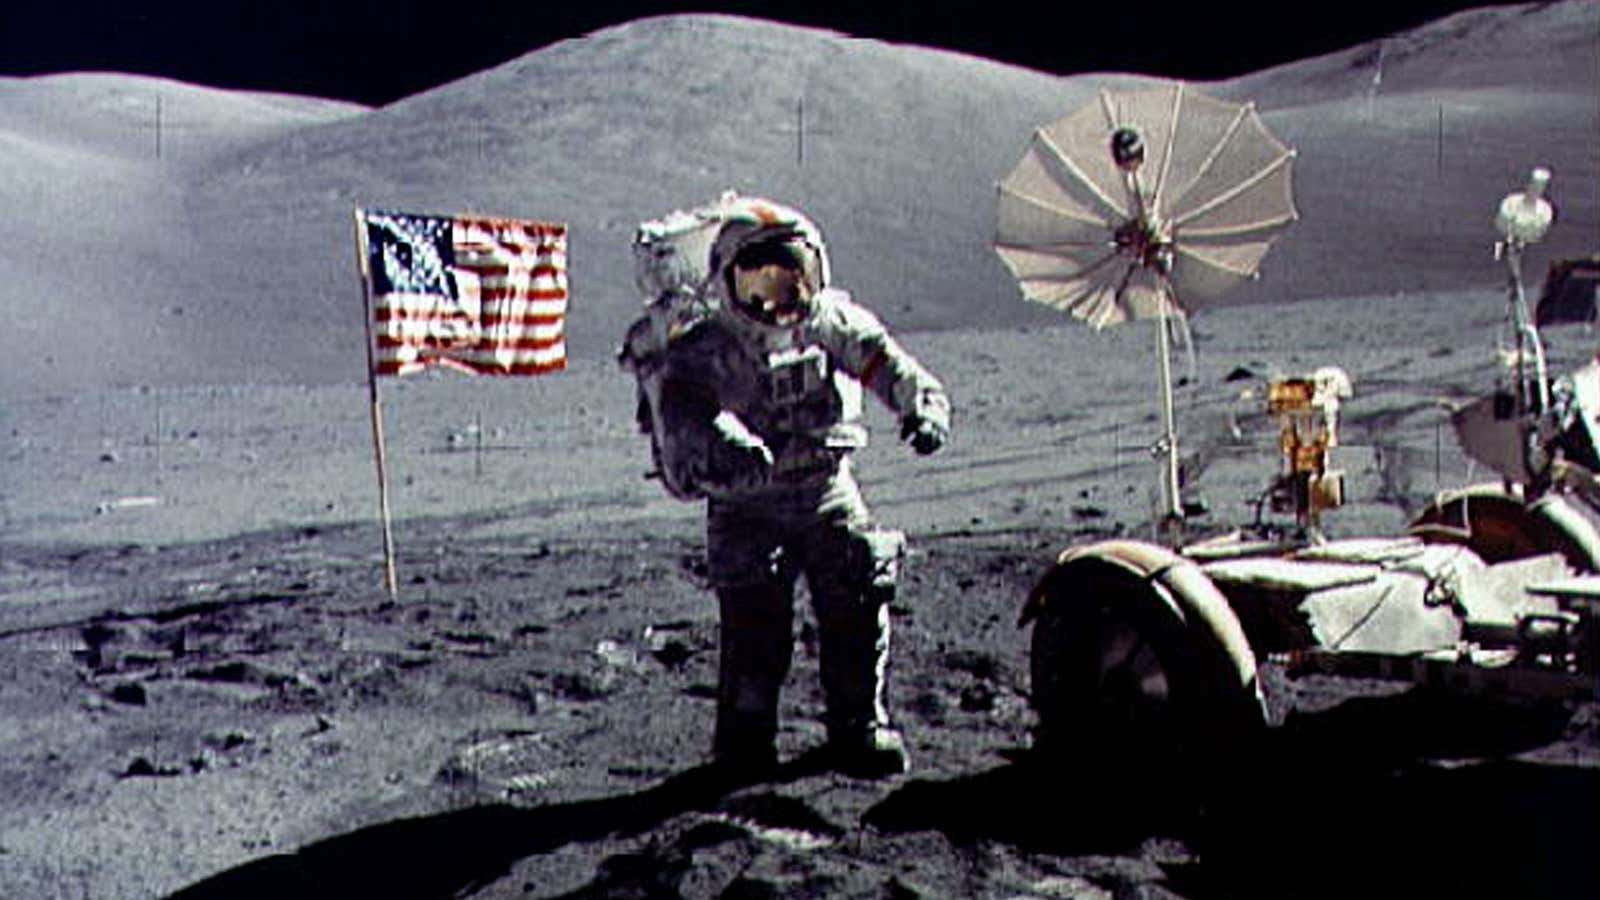 Gene Cernan on the moon, in a photograph shot by Harrison Schmitt, lunar module pilot.